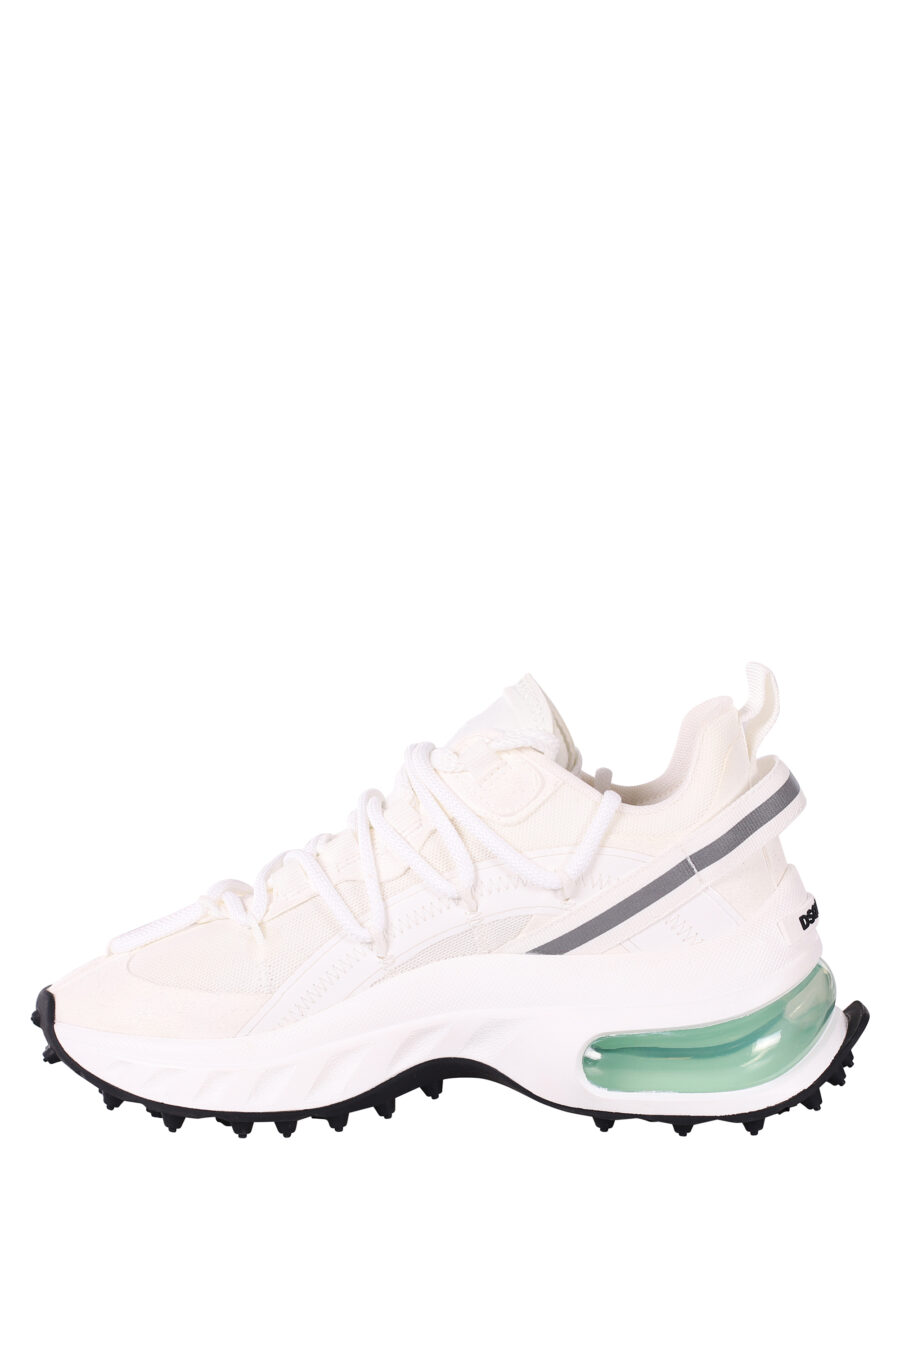 Zapatillas blancas con camara de aire verde - IMG 5840